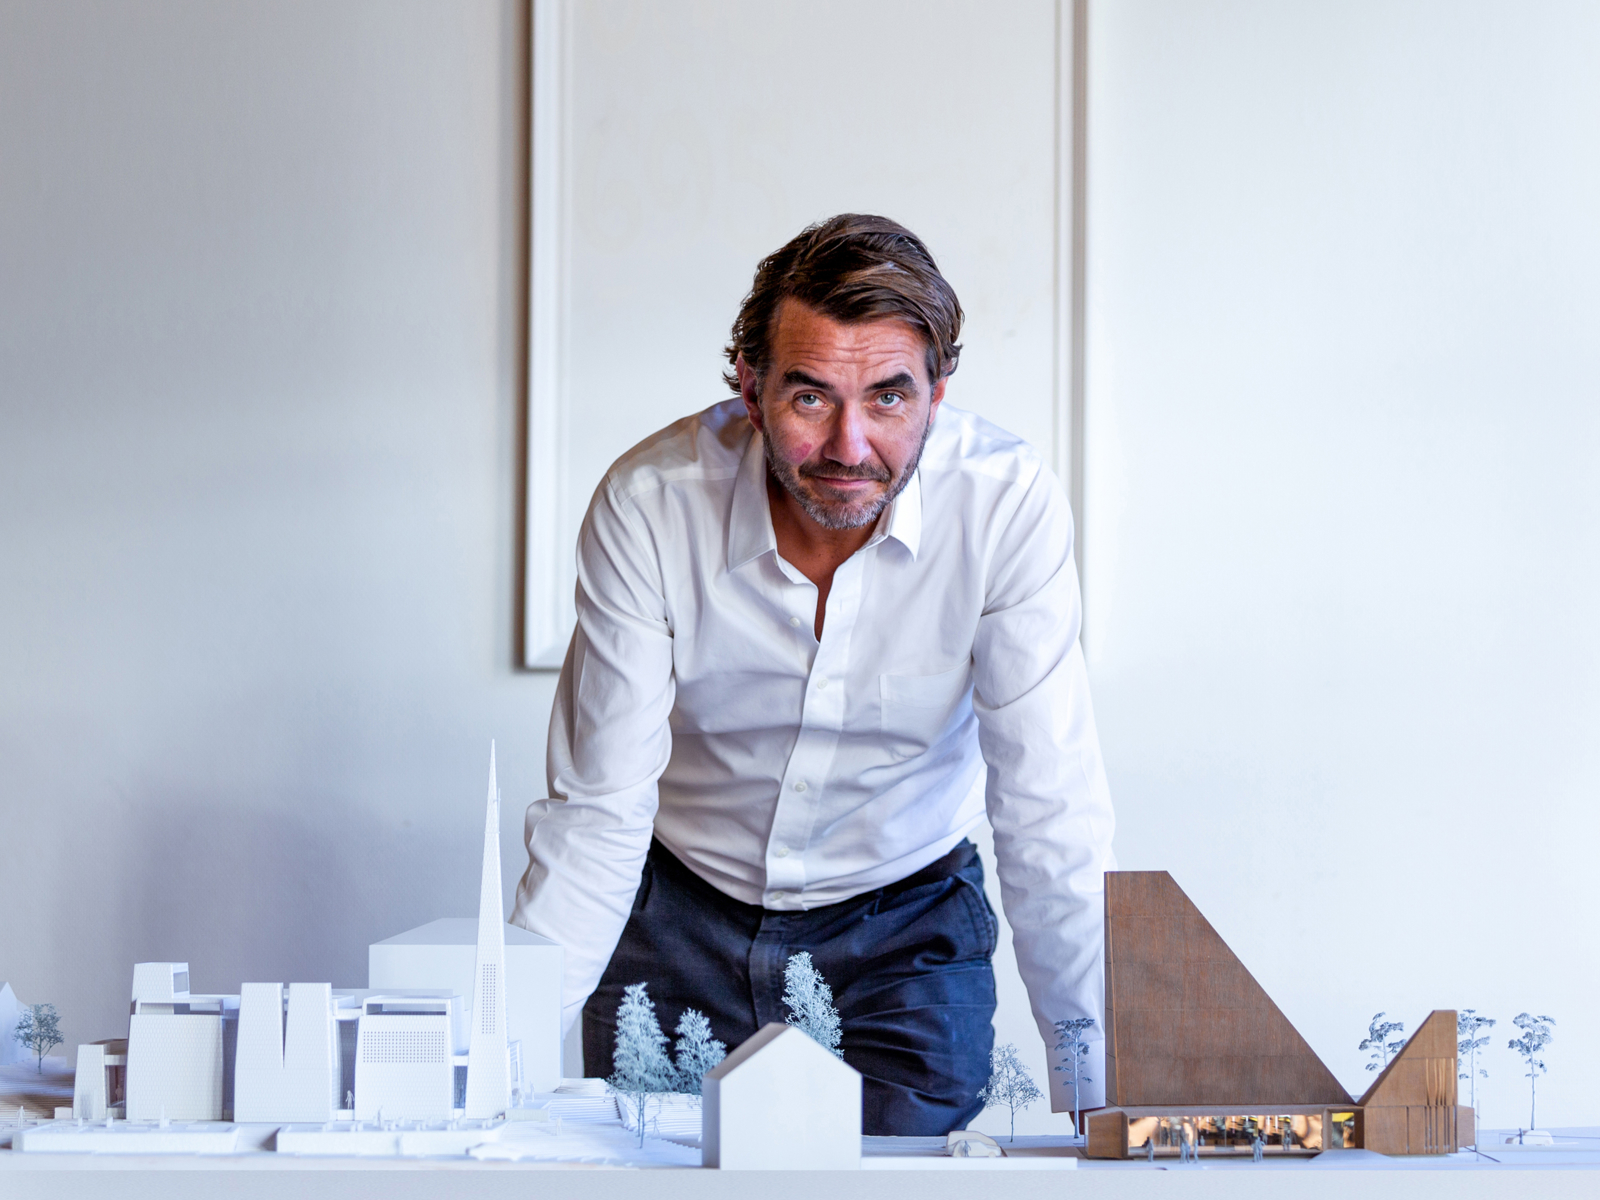 Espen Surnevik lener seg over et bord med arkitekturmodeller på. Foto.